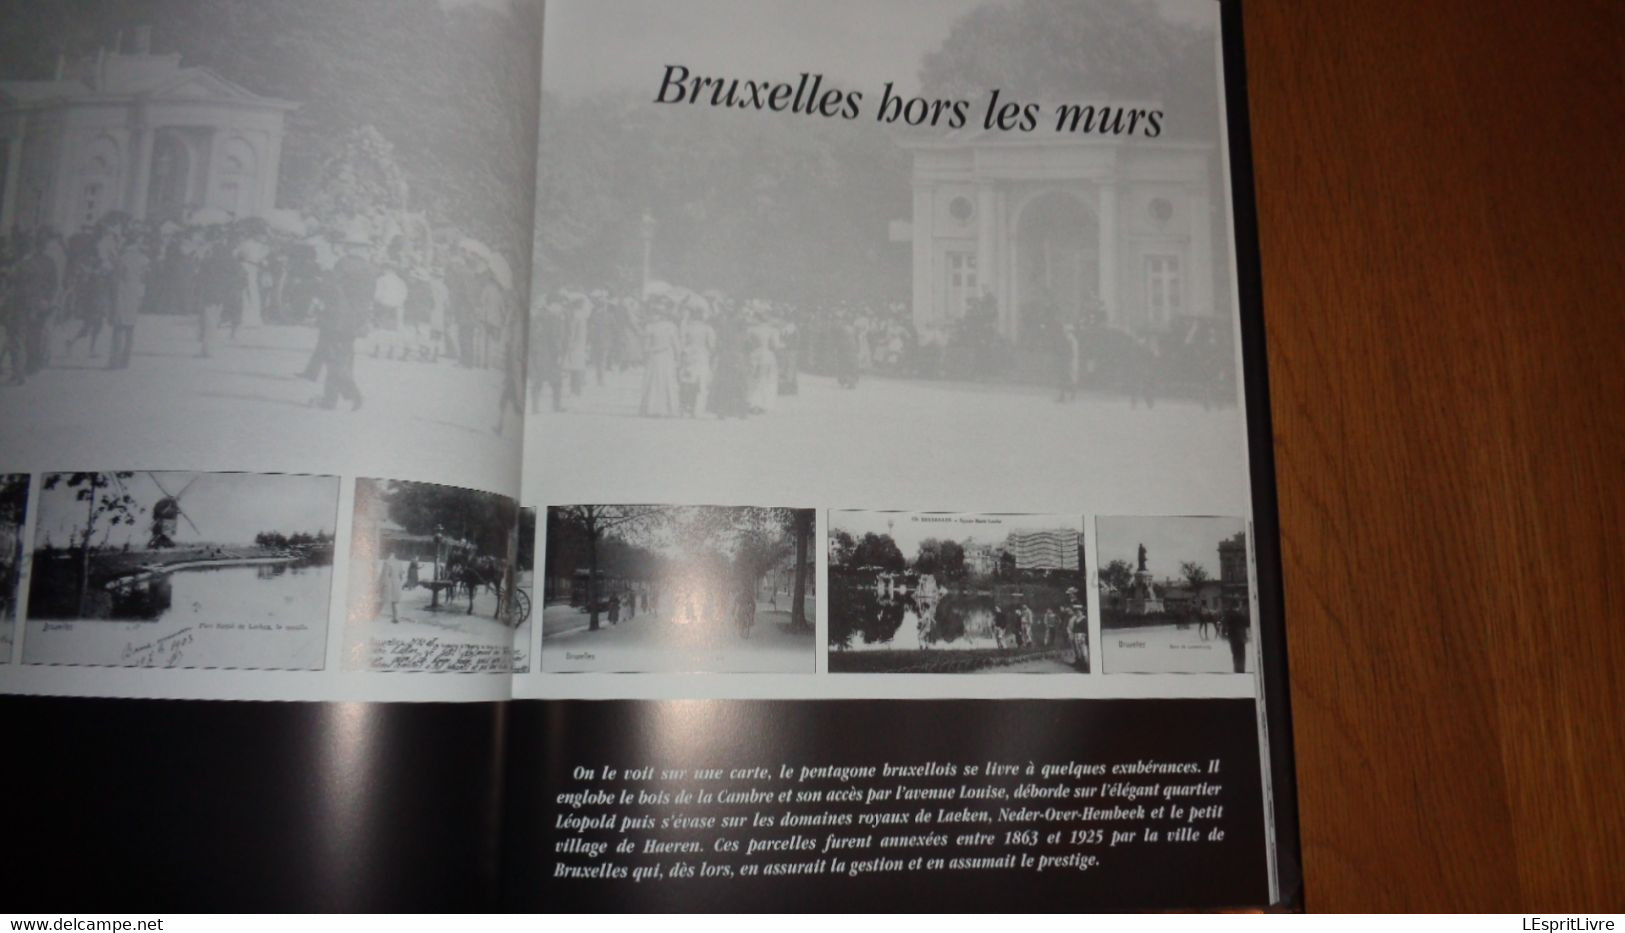 BRUXELLES D' ANTAN à Travers la Carte Postale Ancienne Régionalisme Schaerbeek Etterbeek Jette Senne Métiers Marché